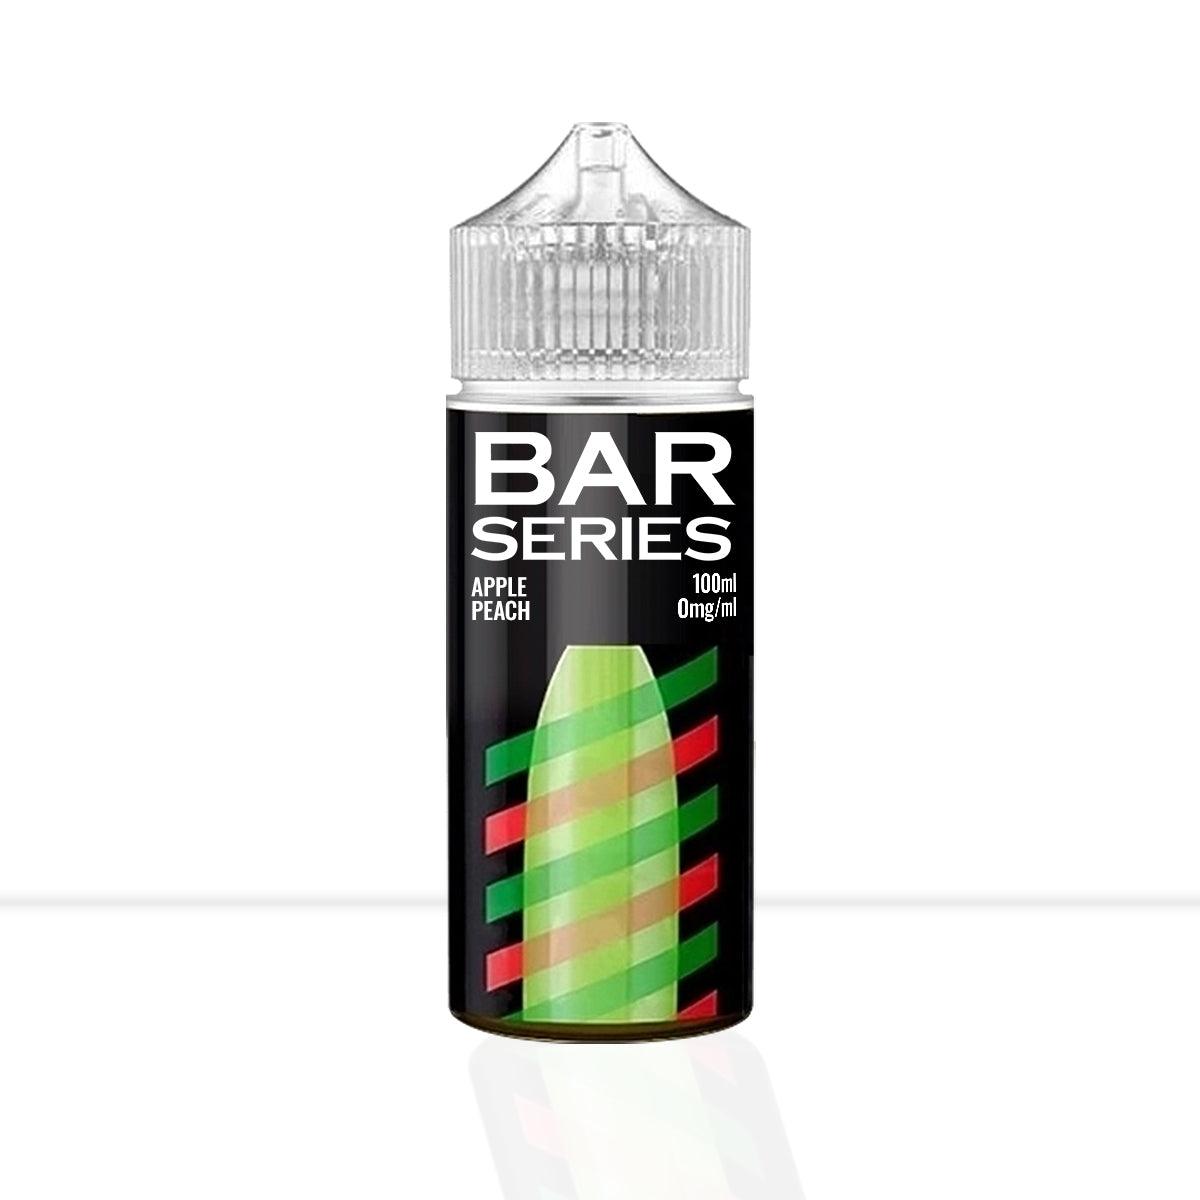 Apple Peach Shortfill E-Liquid Bar Series - Apple Peach Shortfill E-Liquid Bar Series - E Liquid